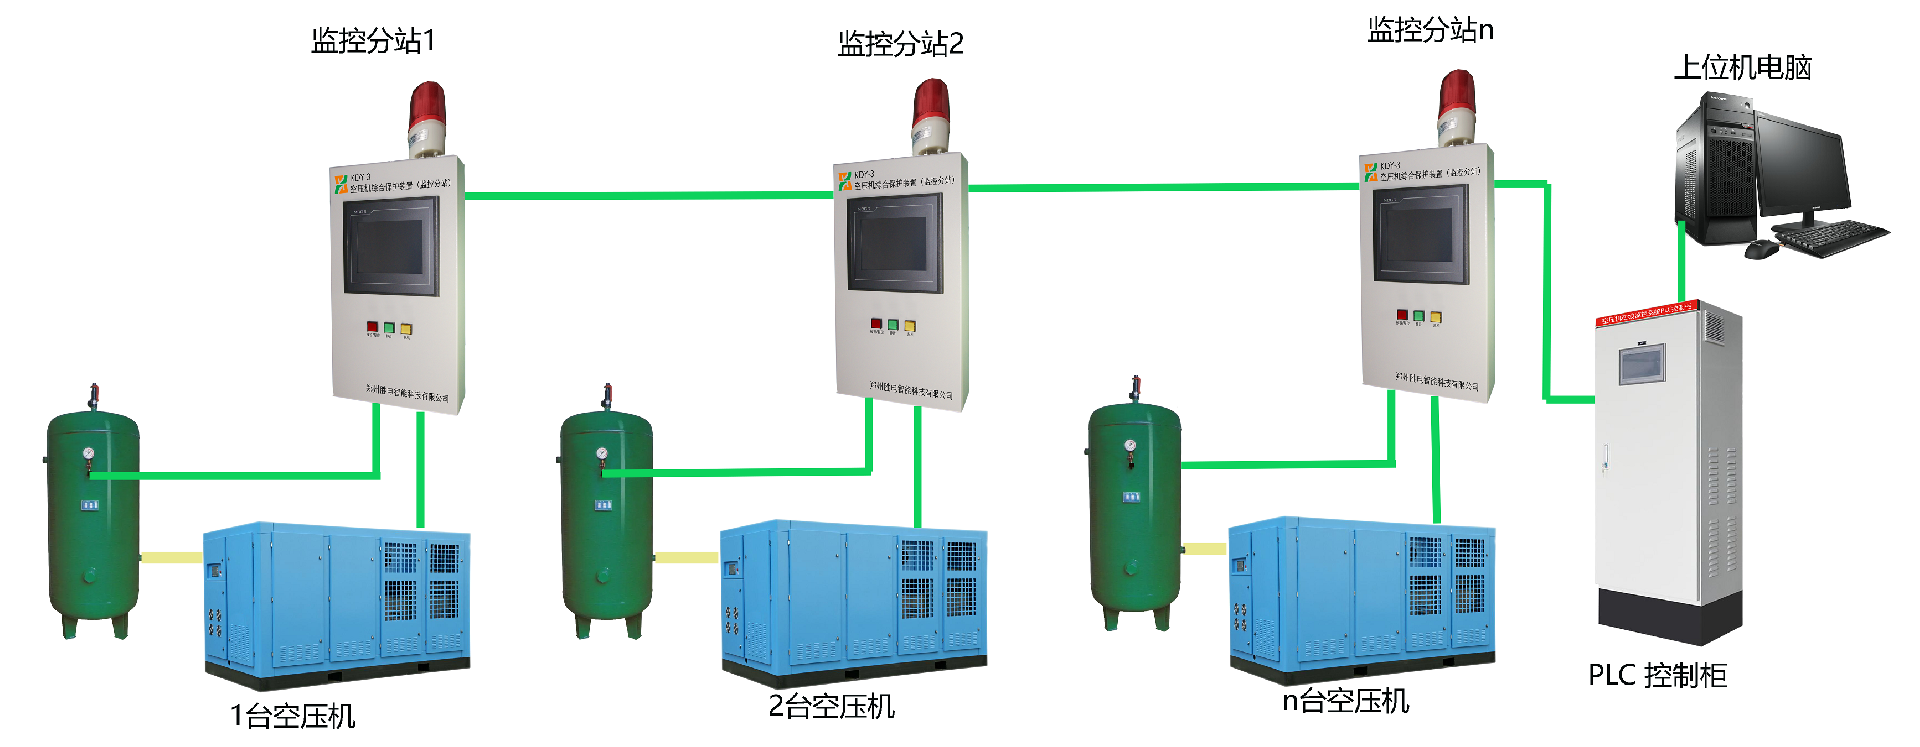 空压机在线监控PLC柜系统图2小图.png